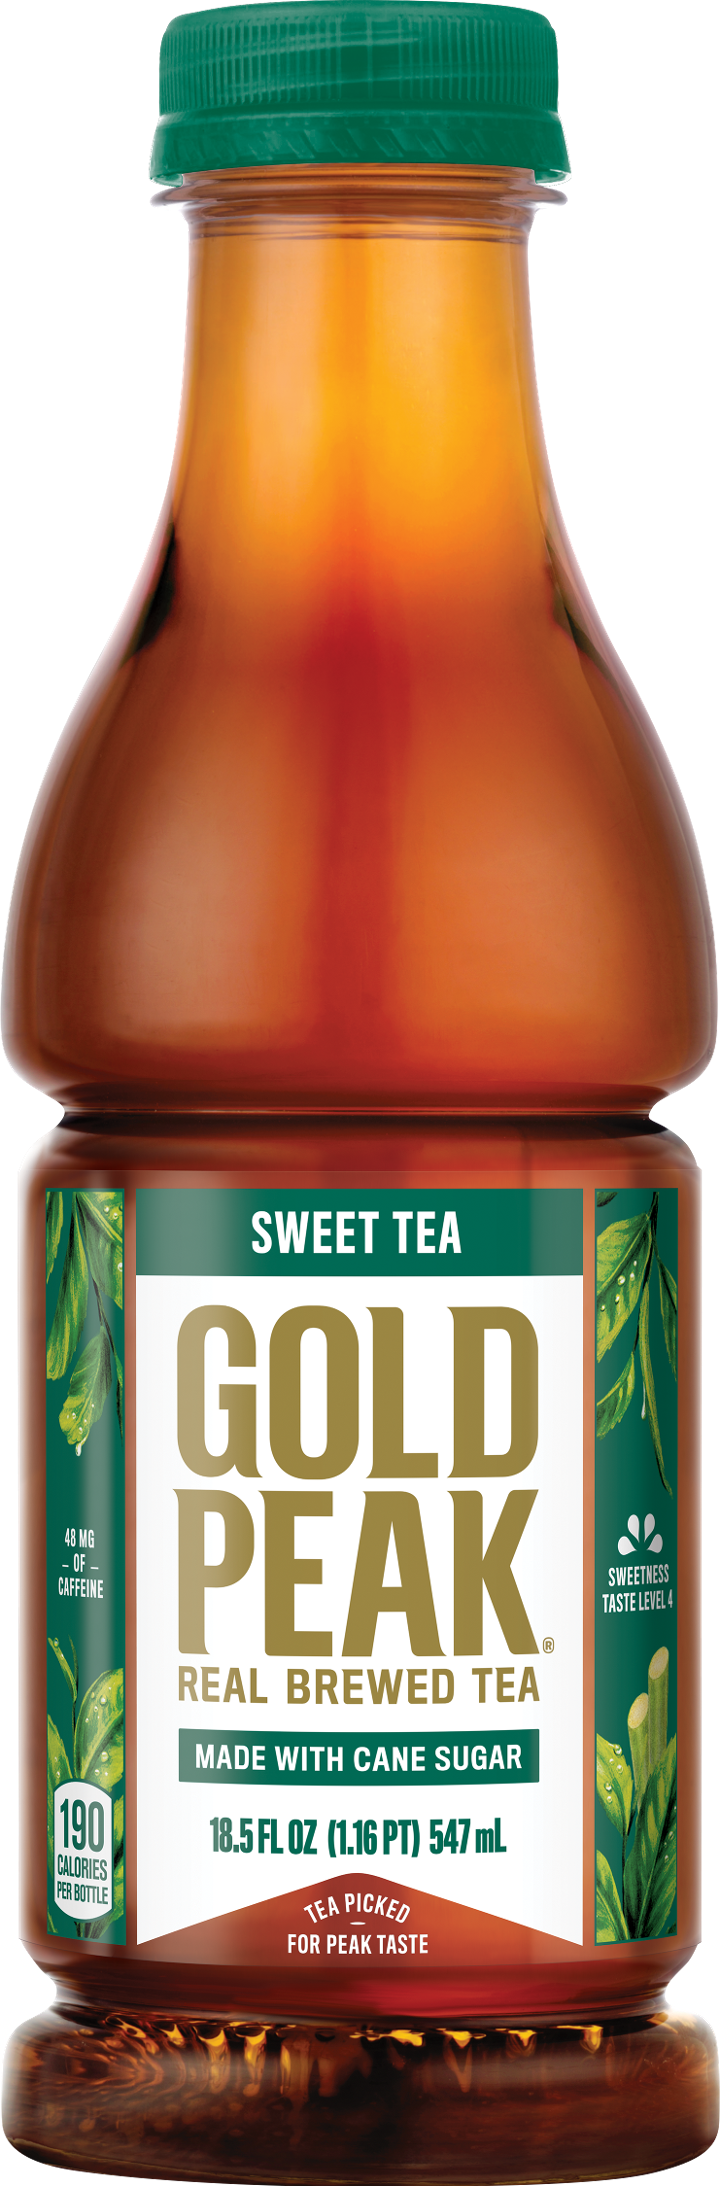 Gold Peak Sweetened Black Tea 18.5oz BTL